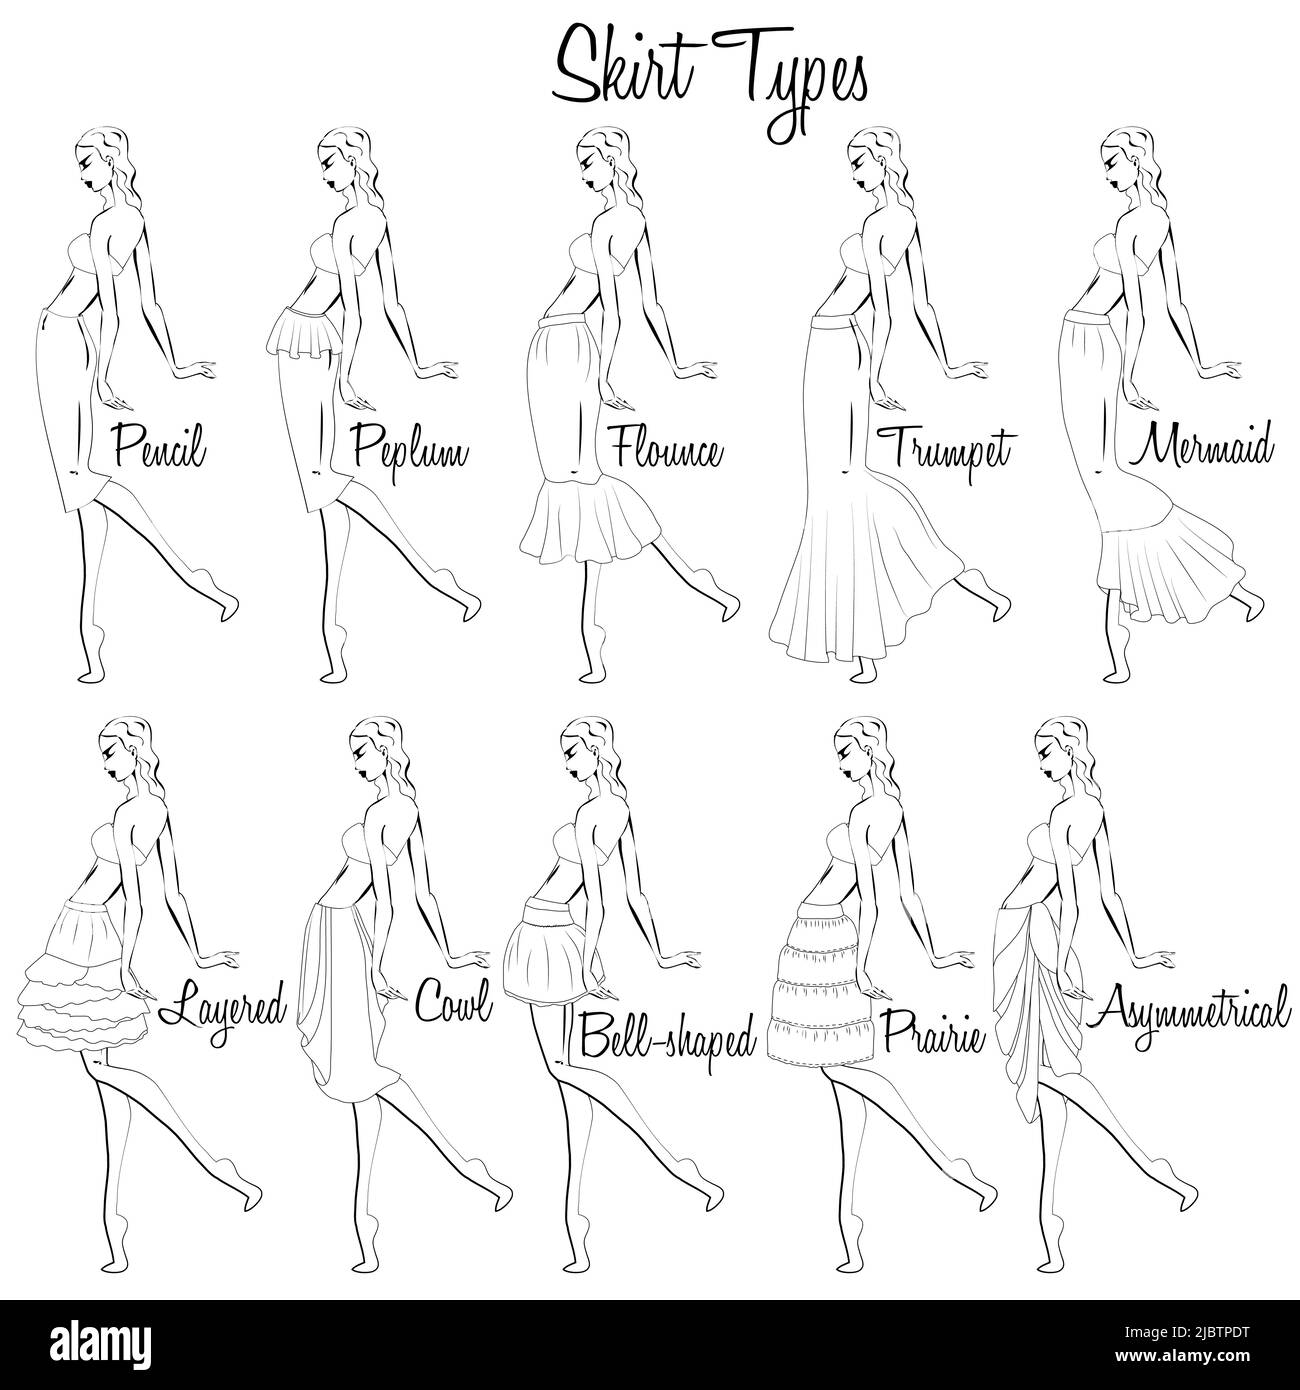 Modèles de jupe. Représentation visuelle des styles des jupes sur la figure. Illustration du design et de la variété des jupes pour femmes. Illustration de Vecteur